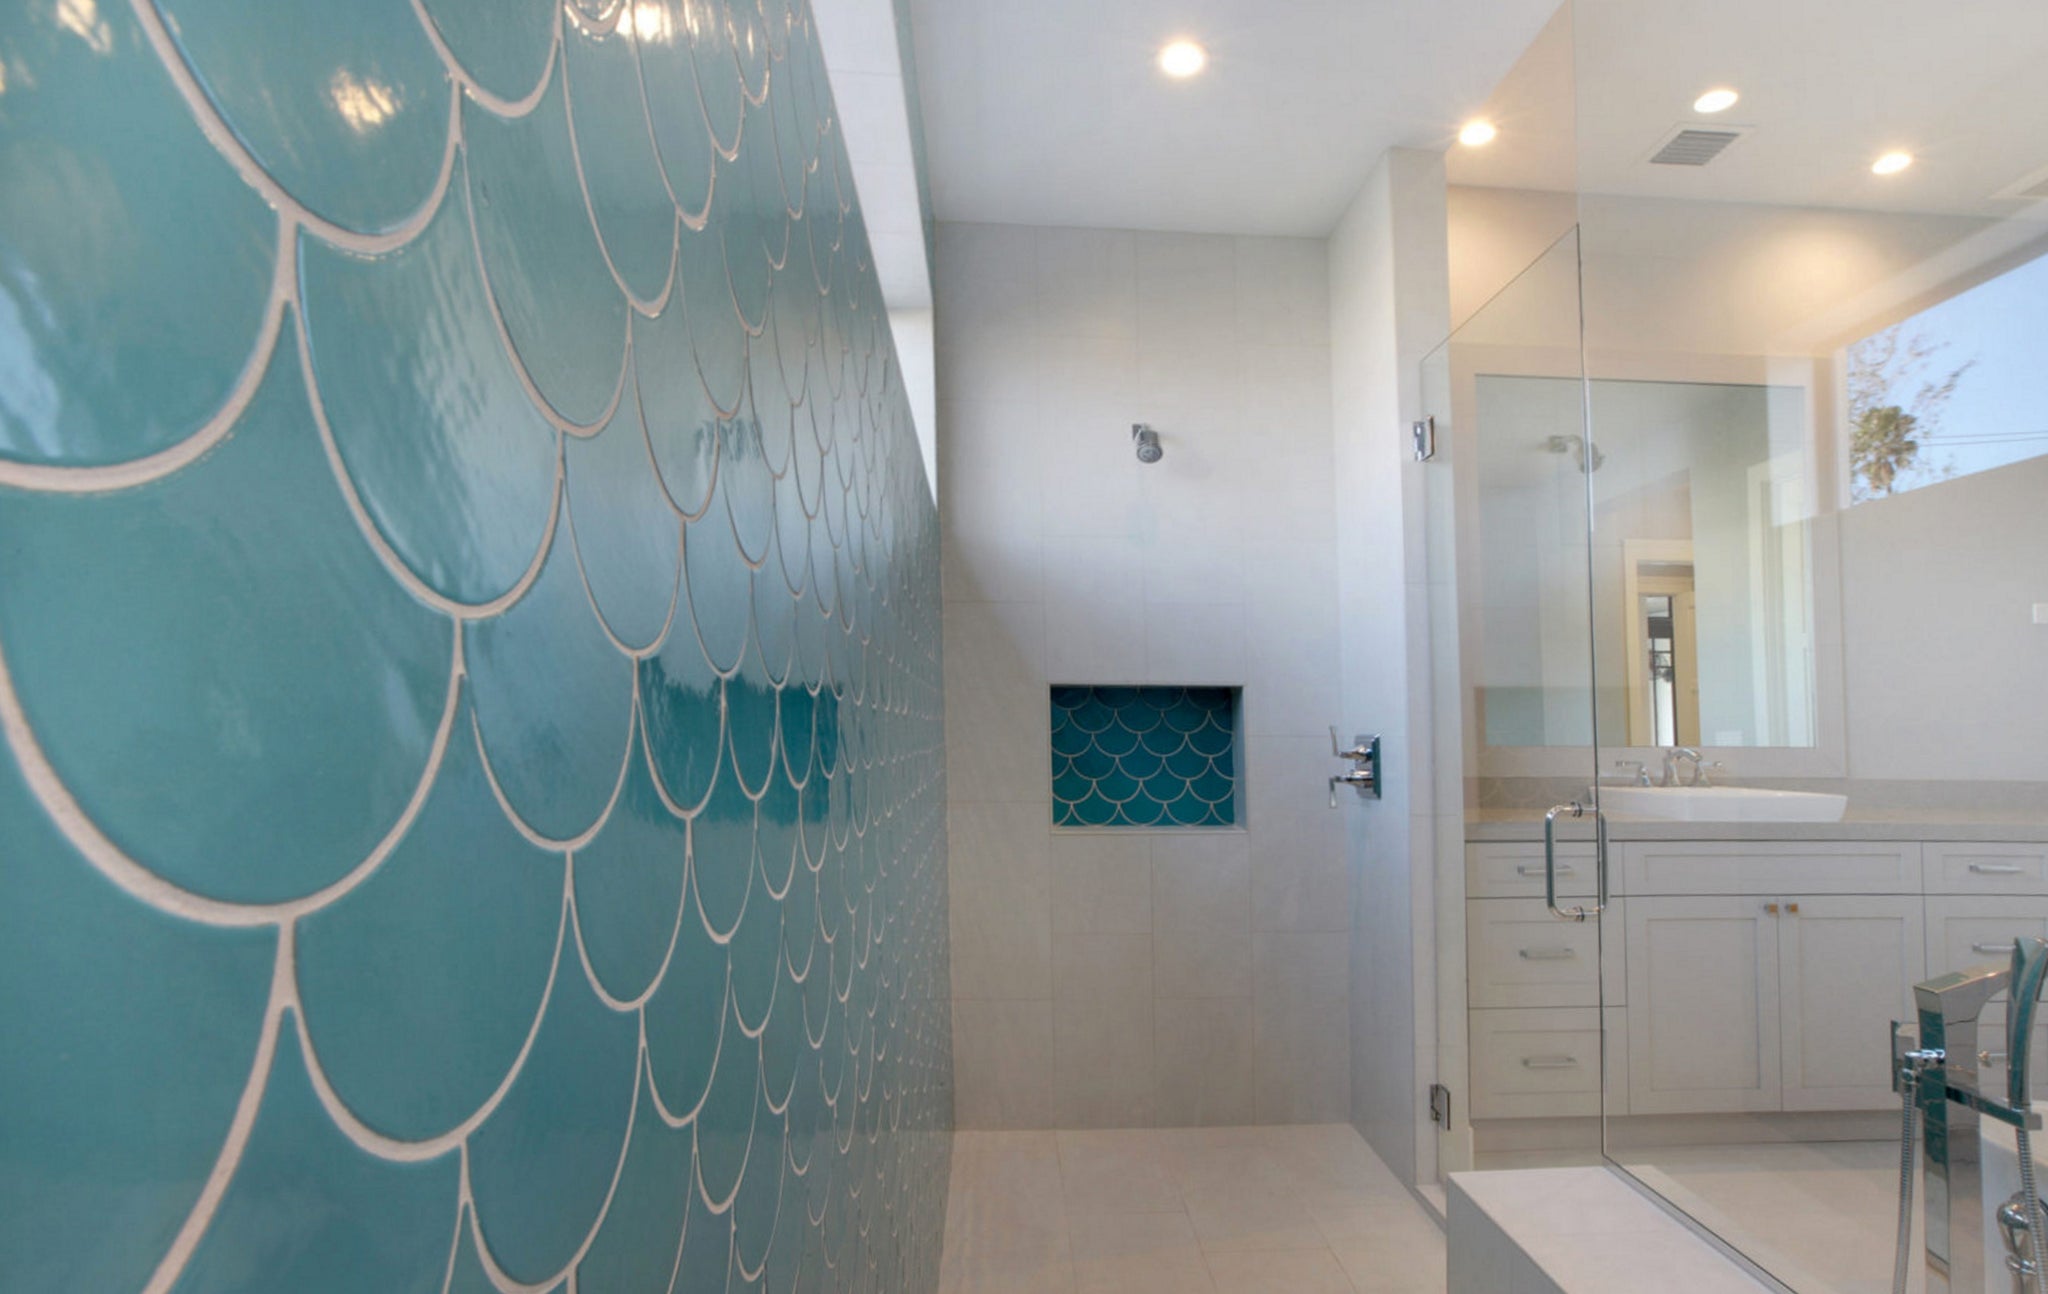 Standard Height Of Bathroom Fittings  Shower shelves, Shower corner shelf,  Shower tile